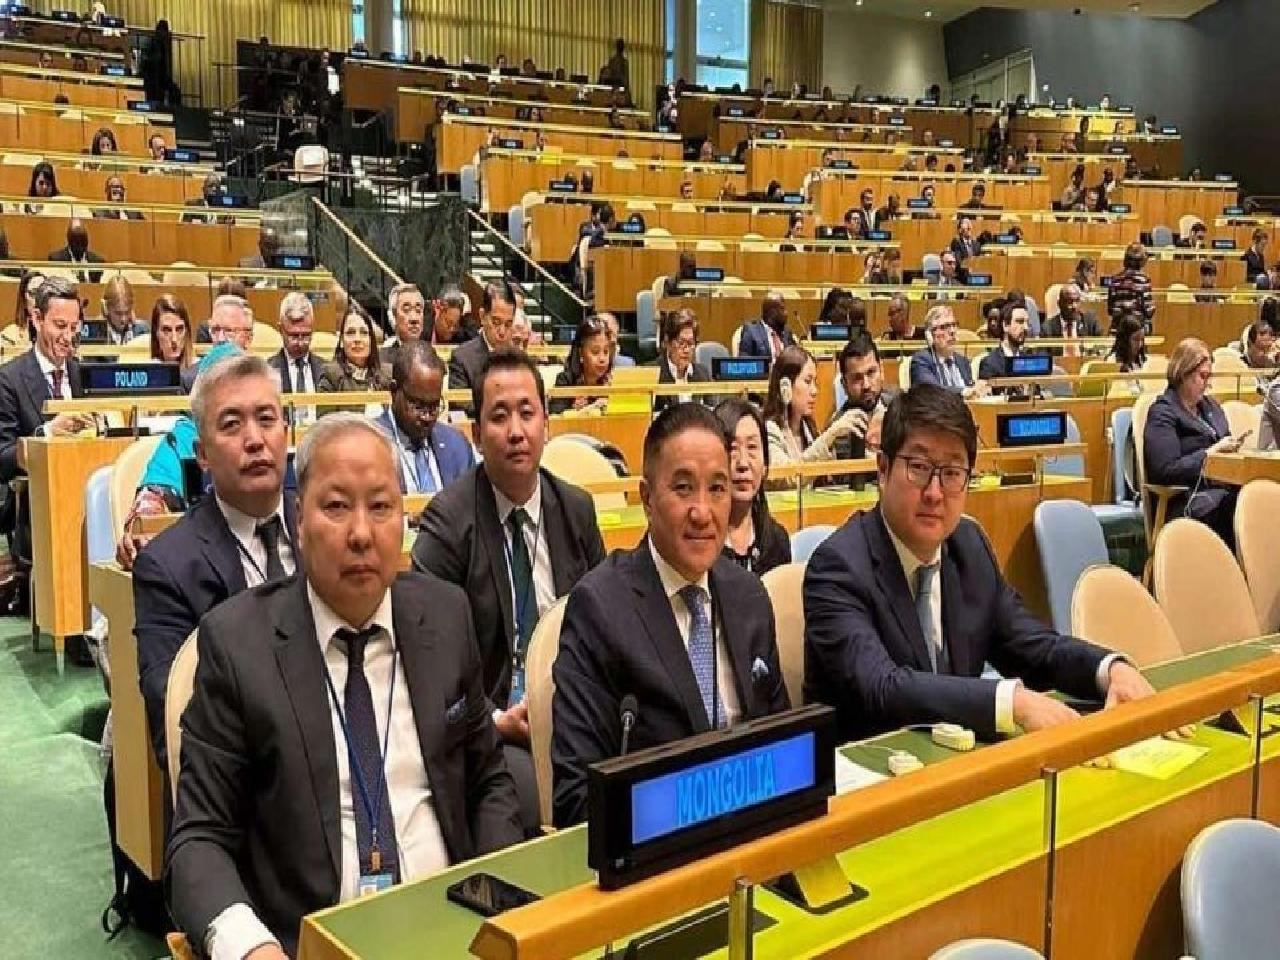 НҮБ-ын Гамшгийн эрсдэлийг бууруулах Дээд түвшний уулзалтад Нийслэл, ОБЕГ-ын төлөөллүүд оролцож байна